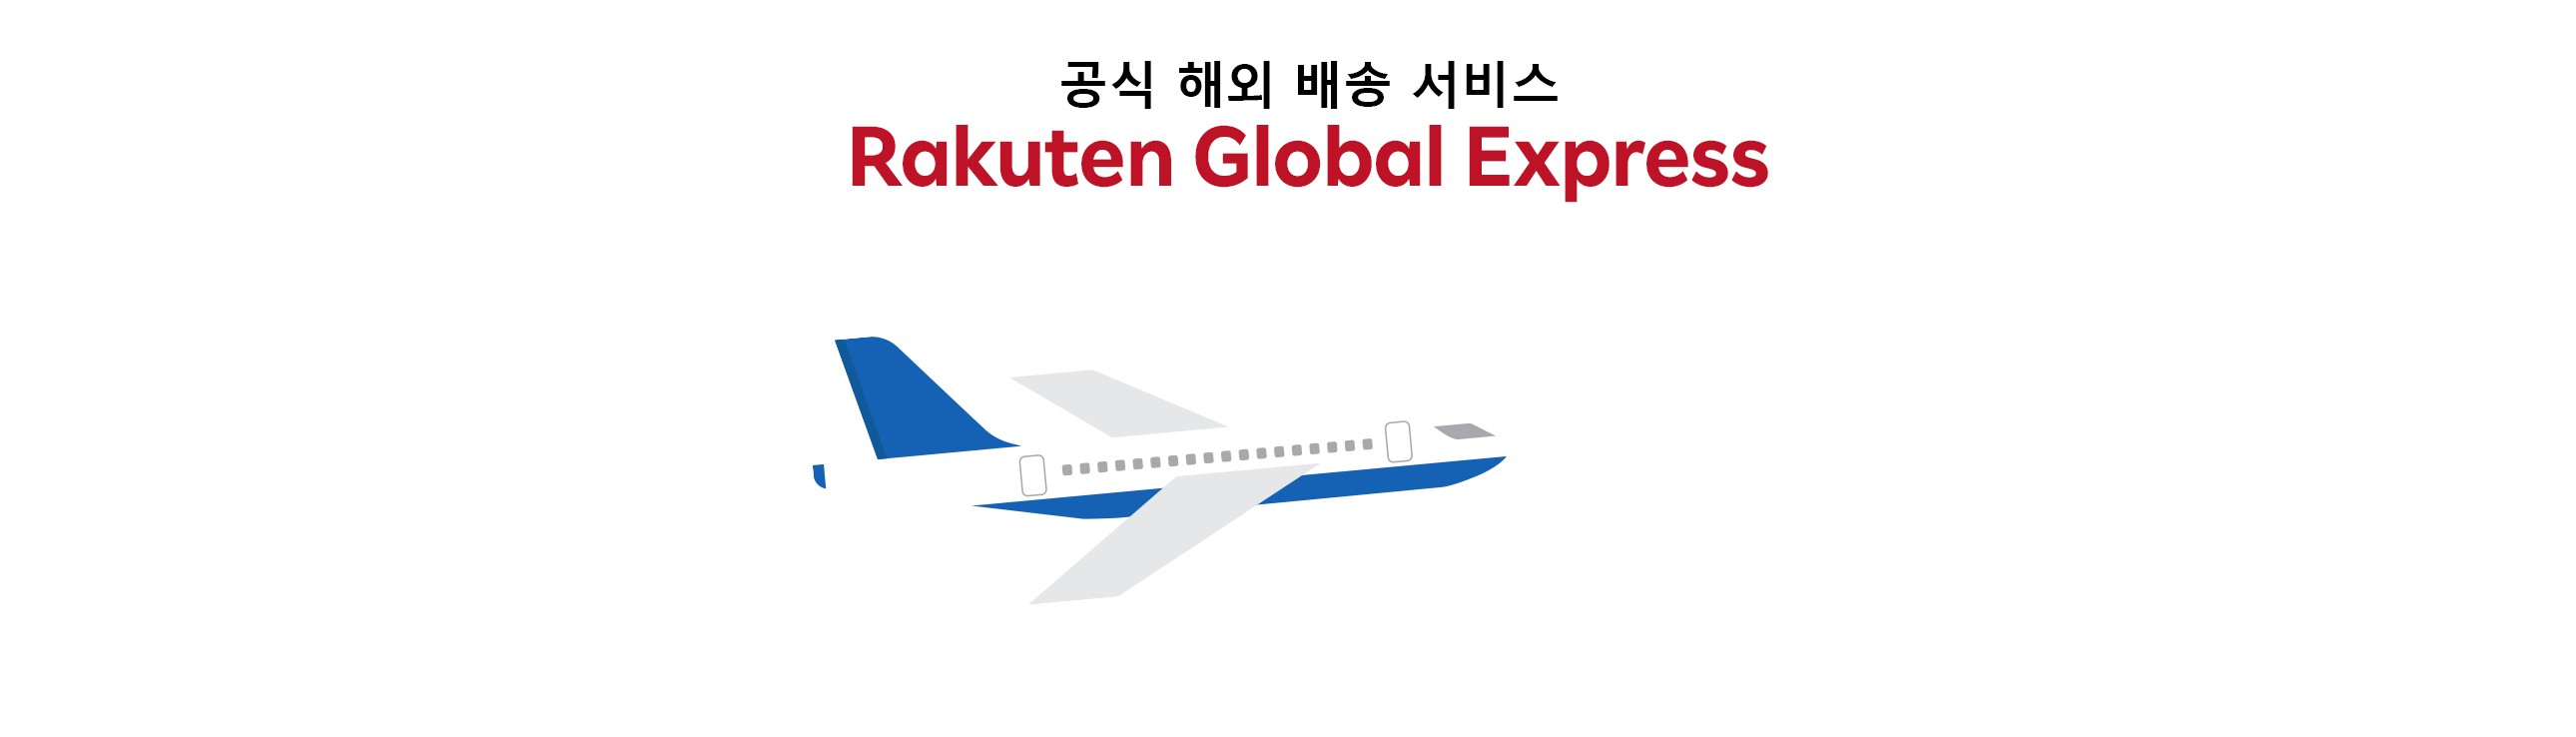 공식 해외배송 서비스 Rakuten 글로벌 익스프레스 다양한 상점들의 상품을 모아서 보내 배송료를 저렴하게!